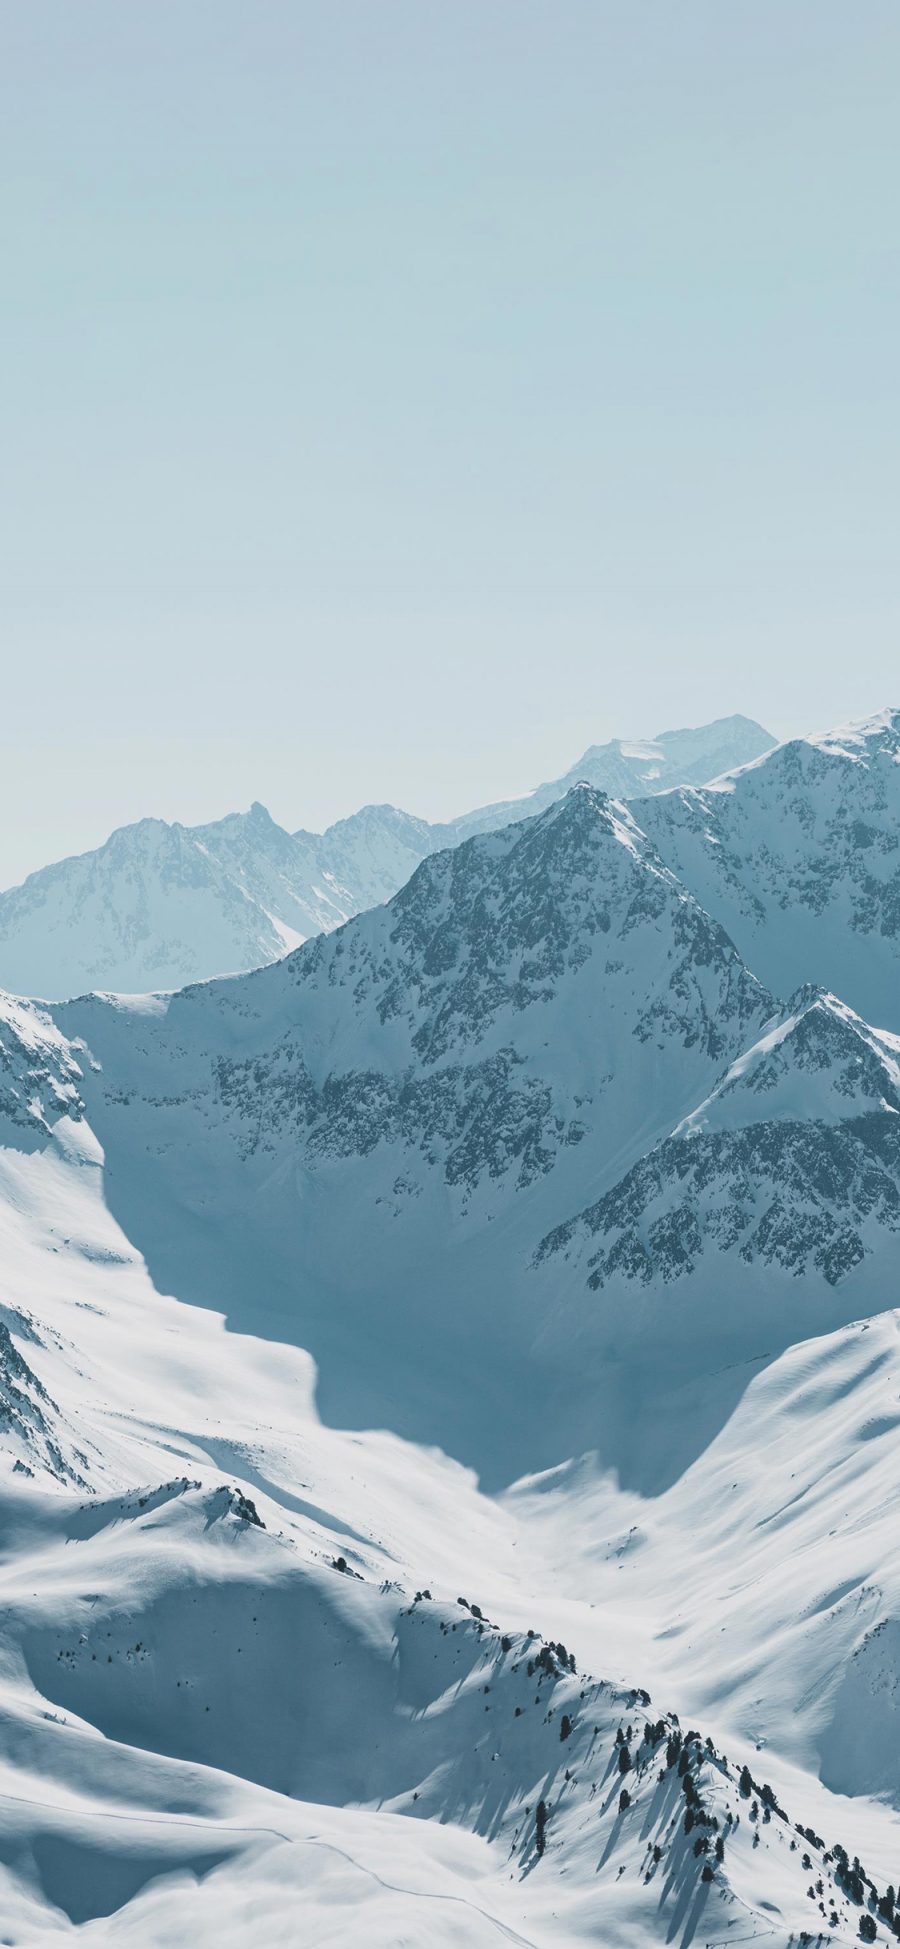 [2436×1125]山峰 雪山 白雪覆盖 壮观 苹果手机壁纸图片